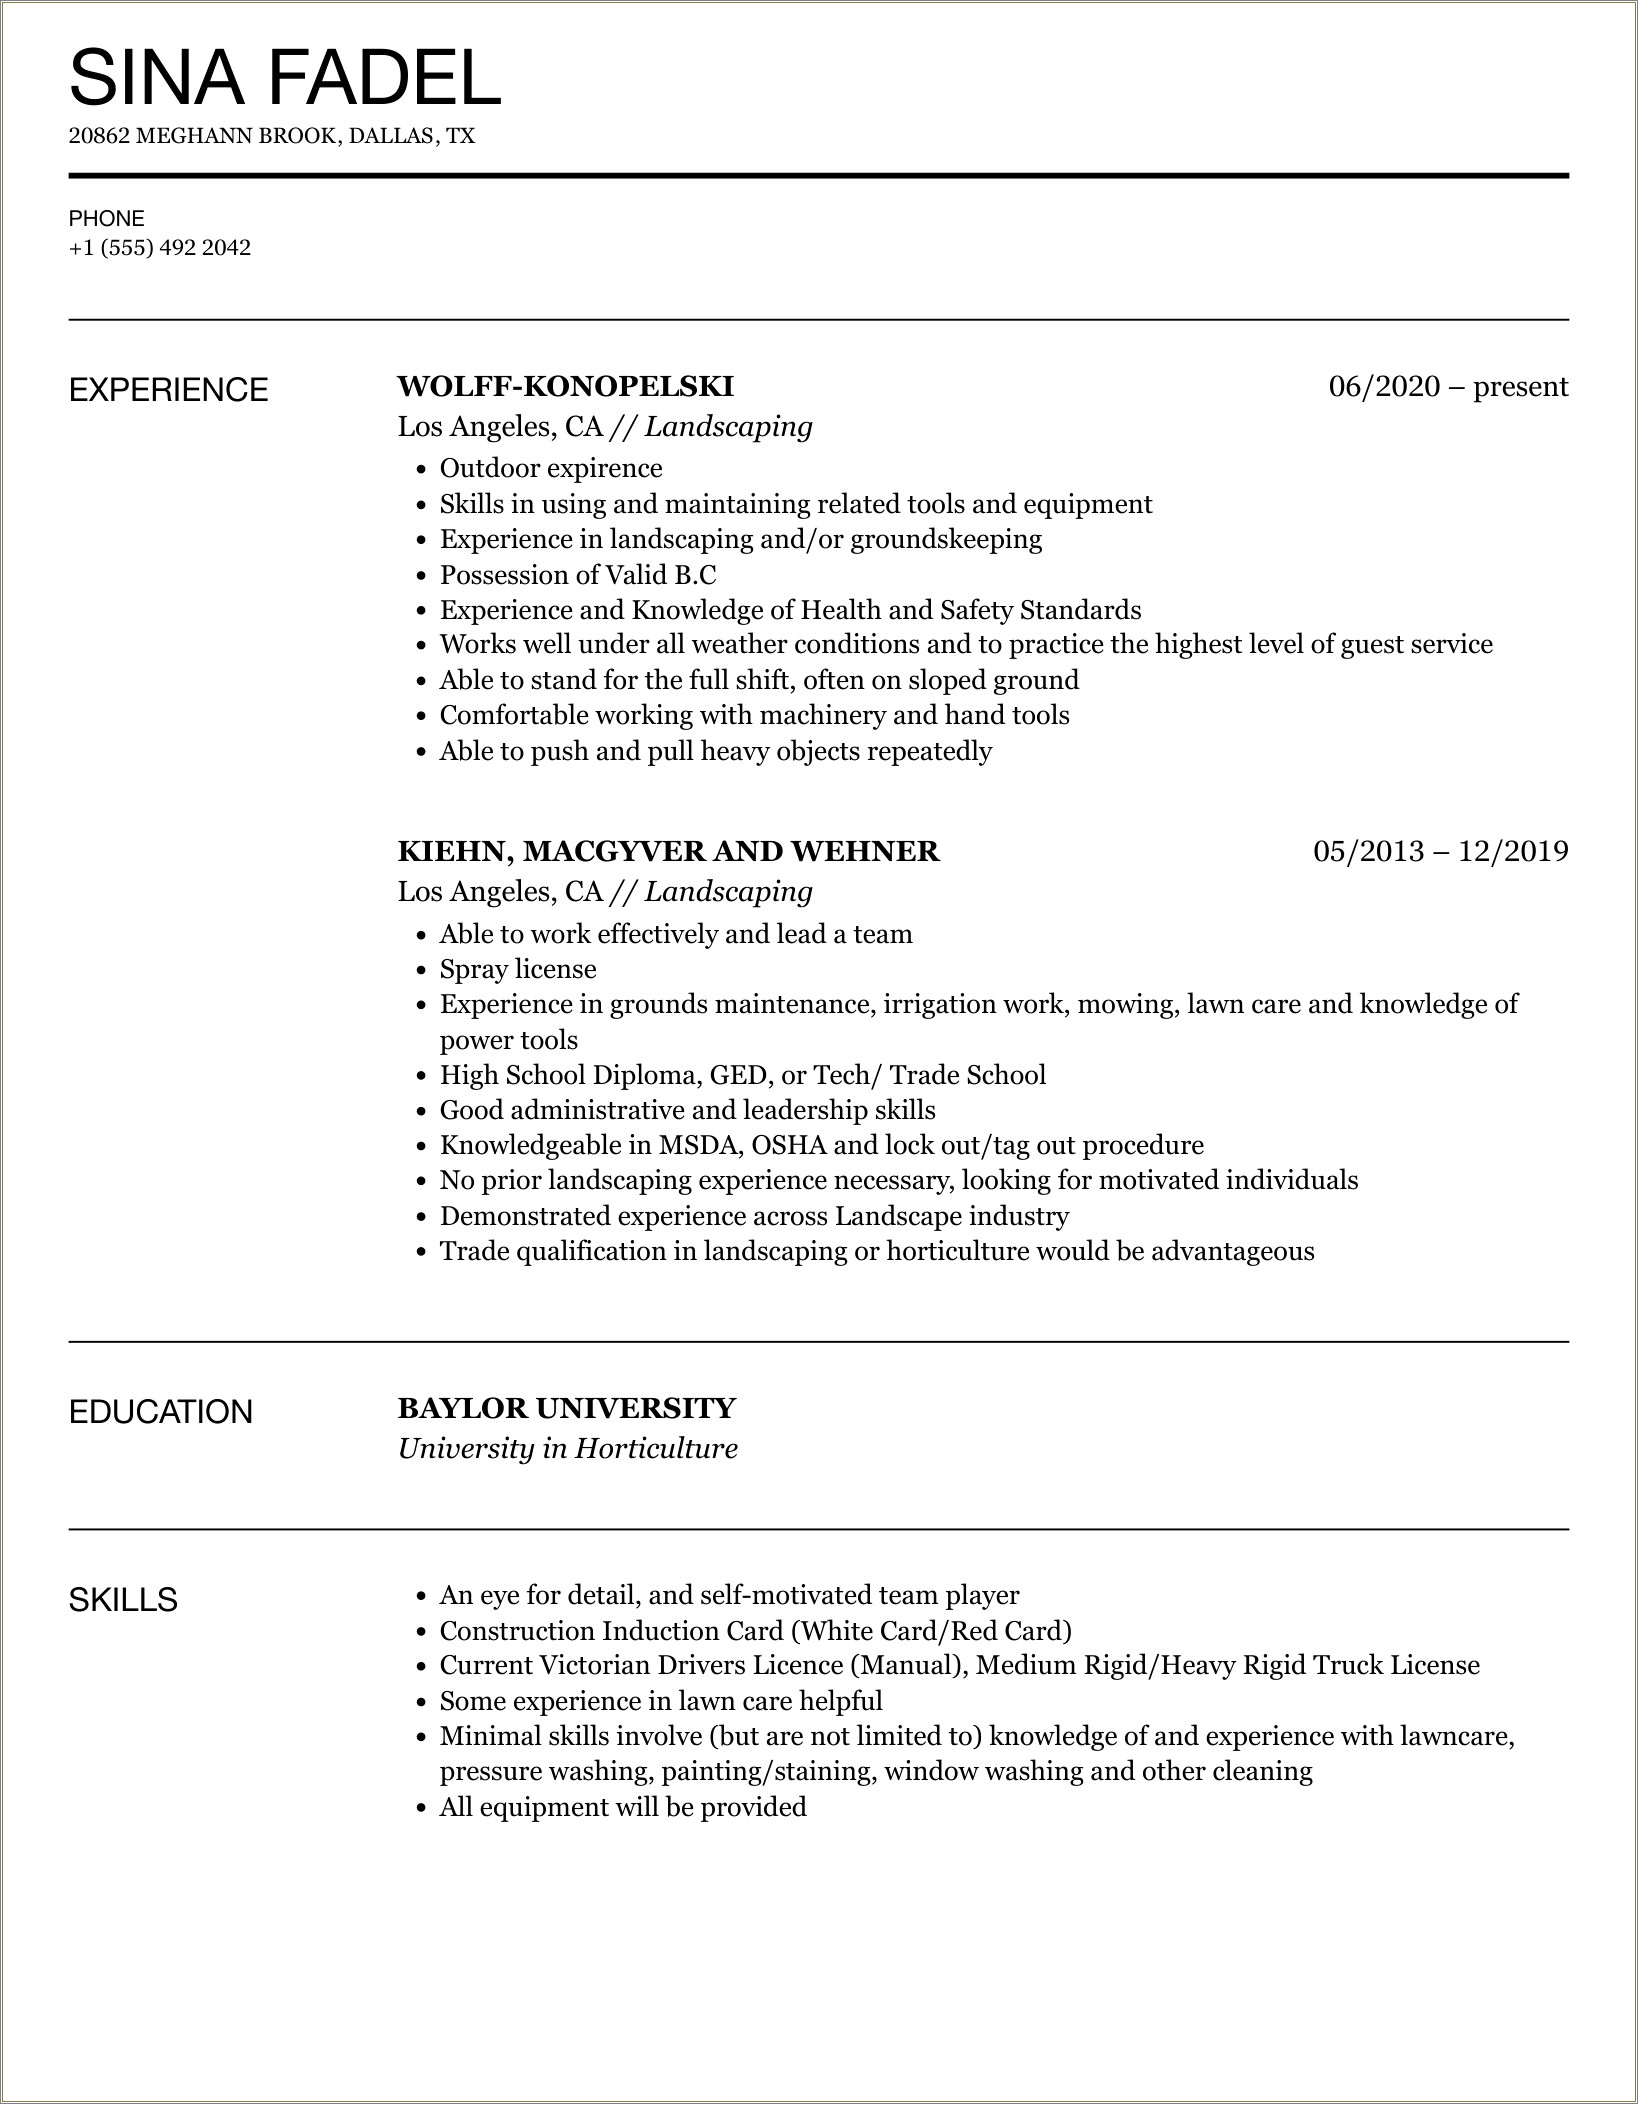 Landscape Technician And Equipment Operator Description For Resume